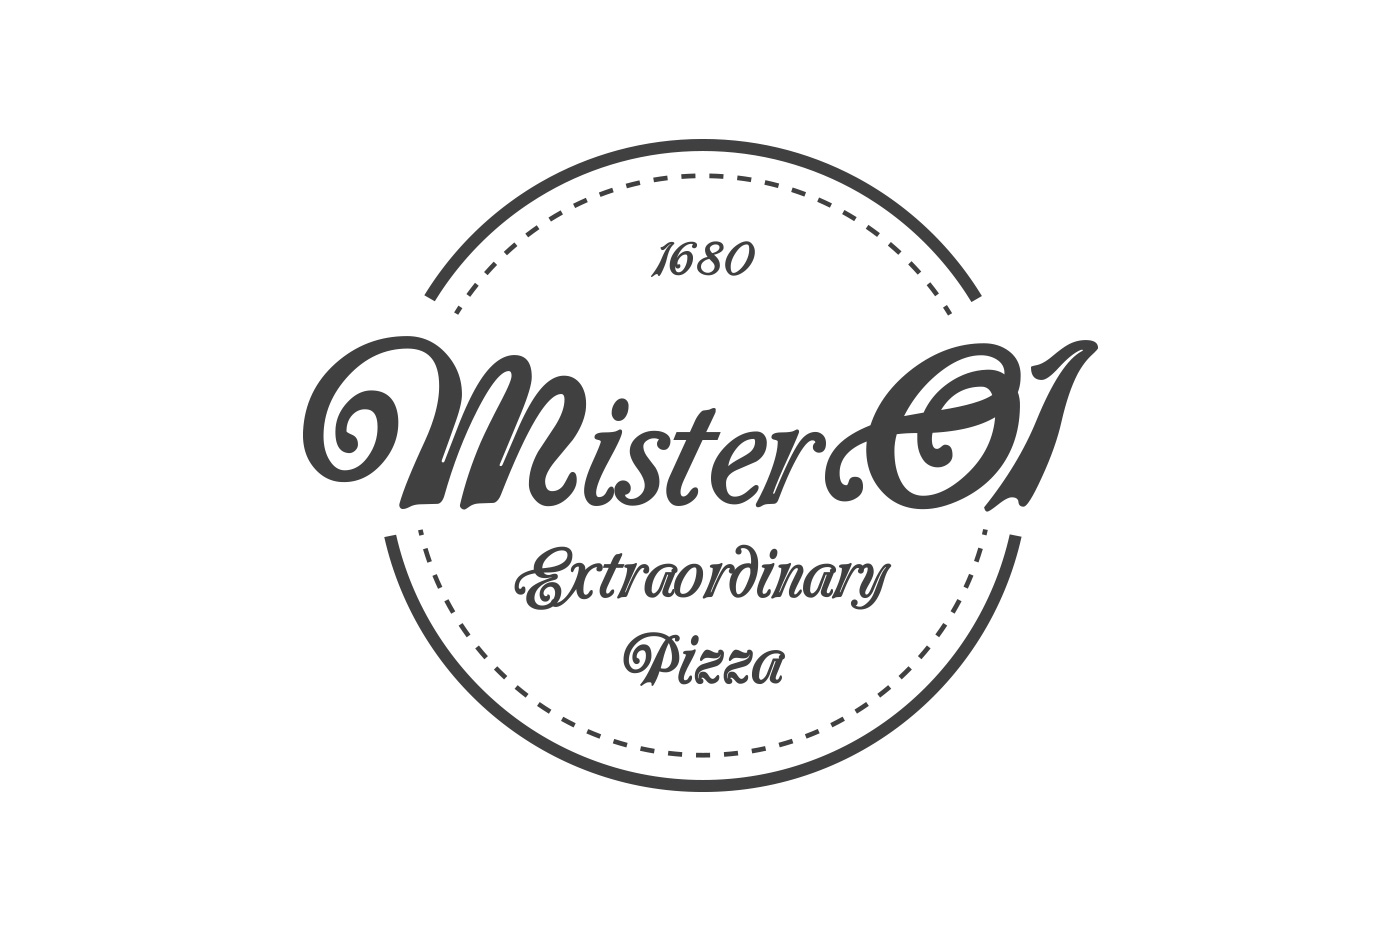 Mister O1 Extraordinary Pizza logo